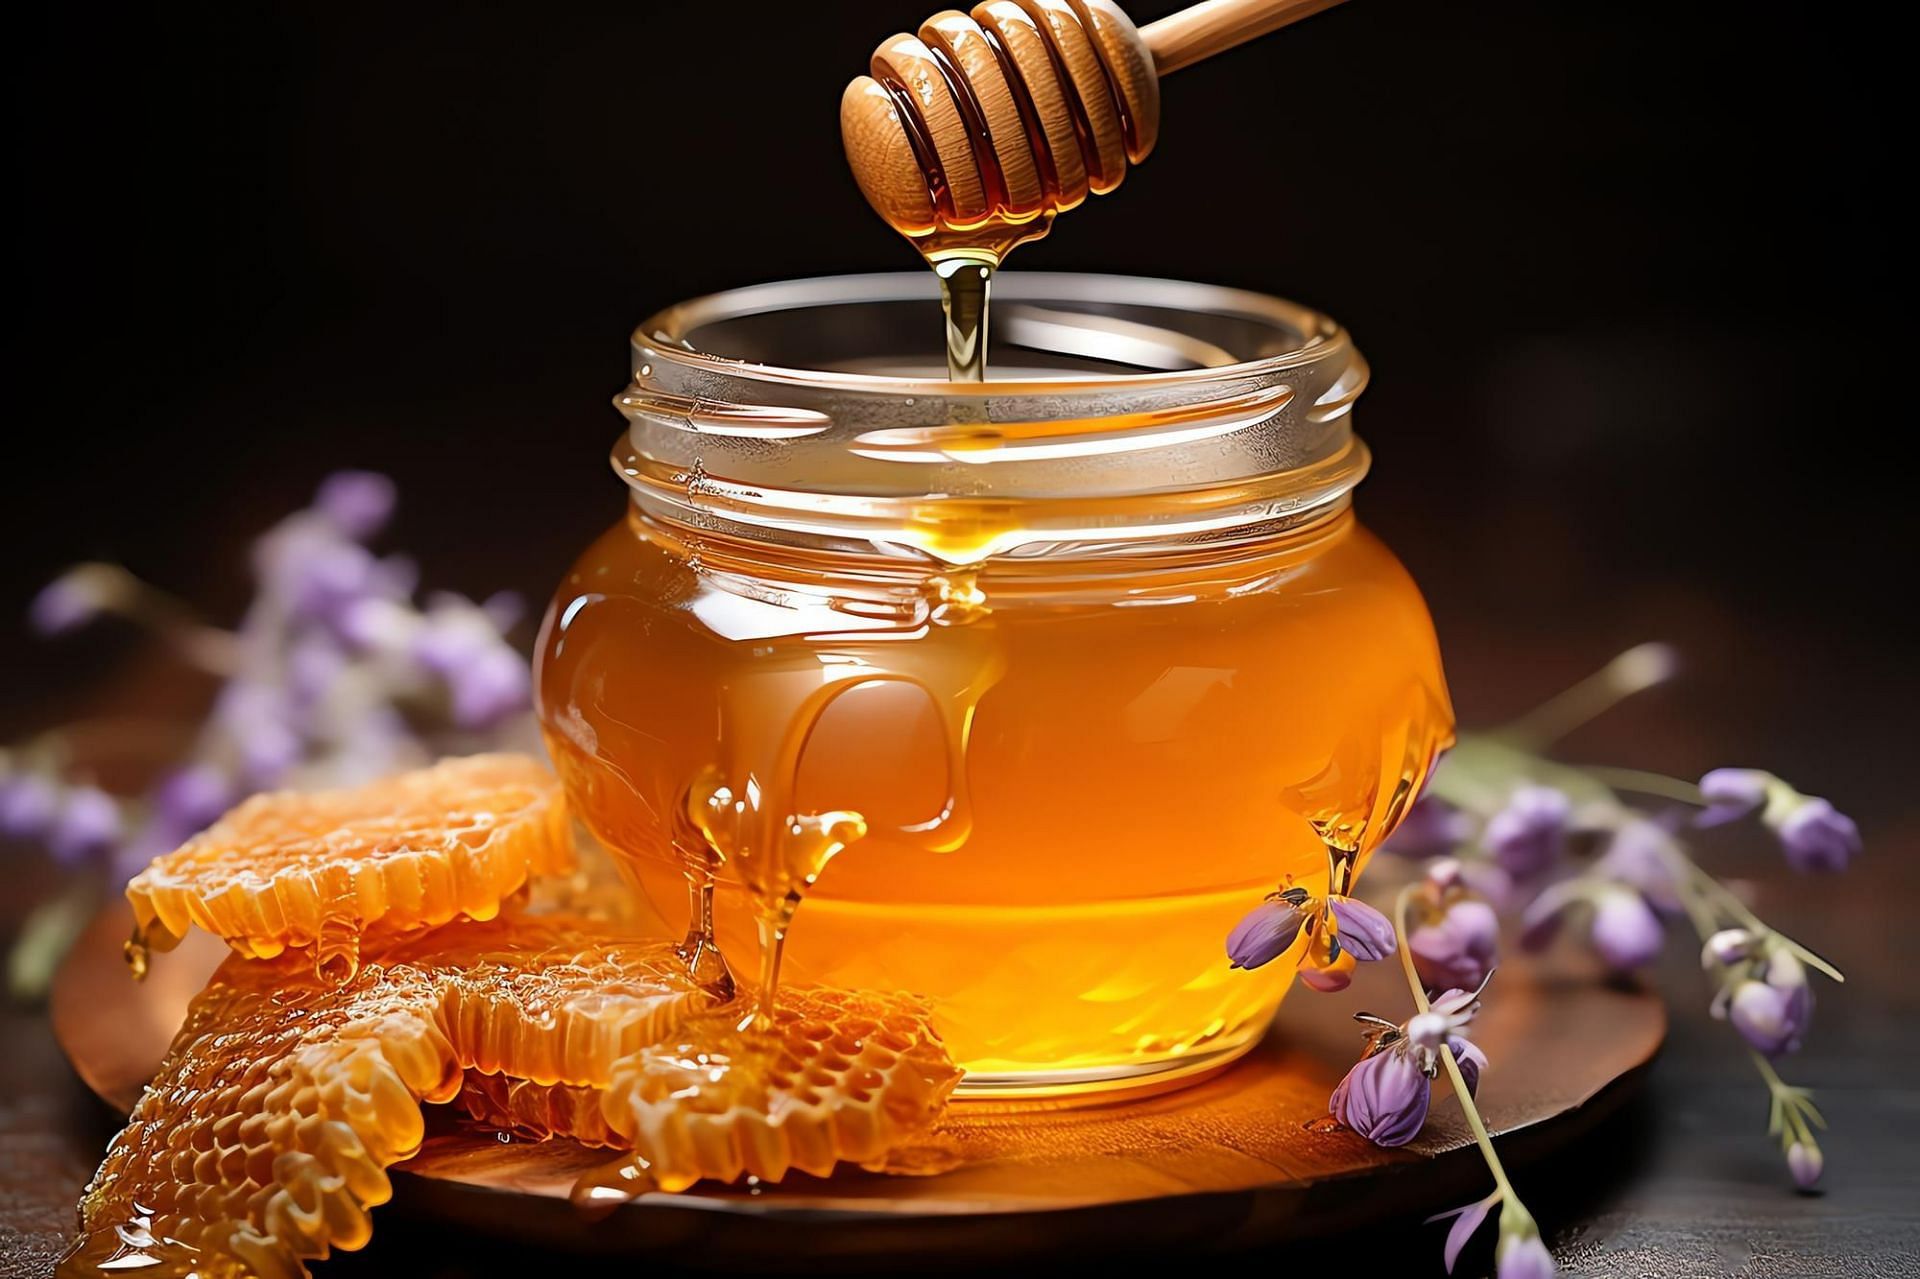 Honey (Image by vwalakte on Freepik)